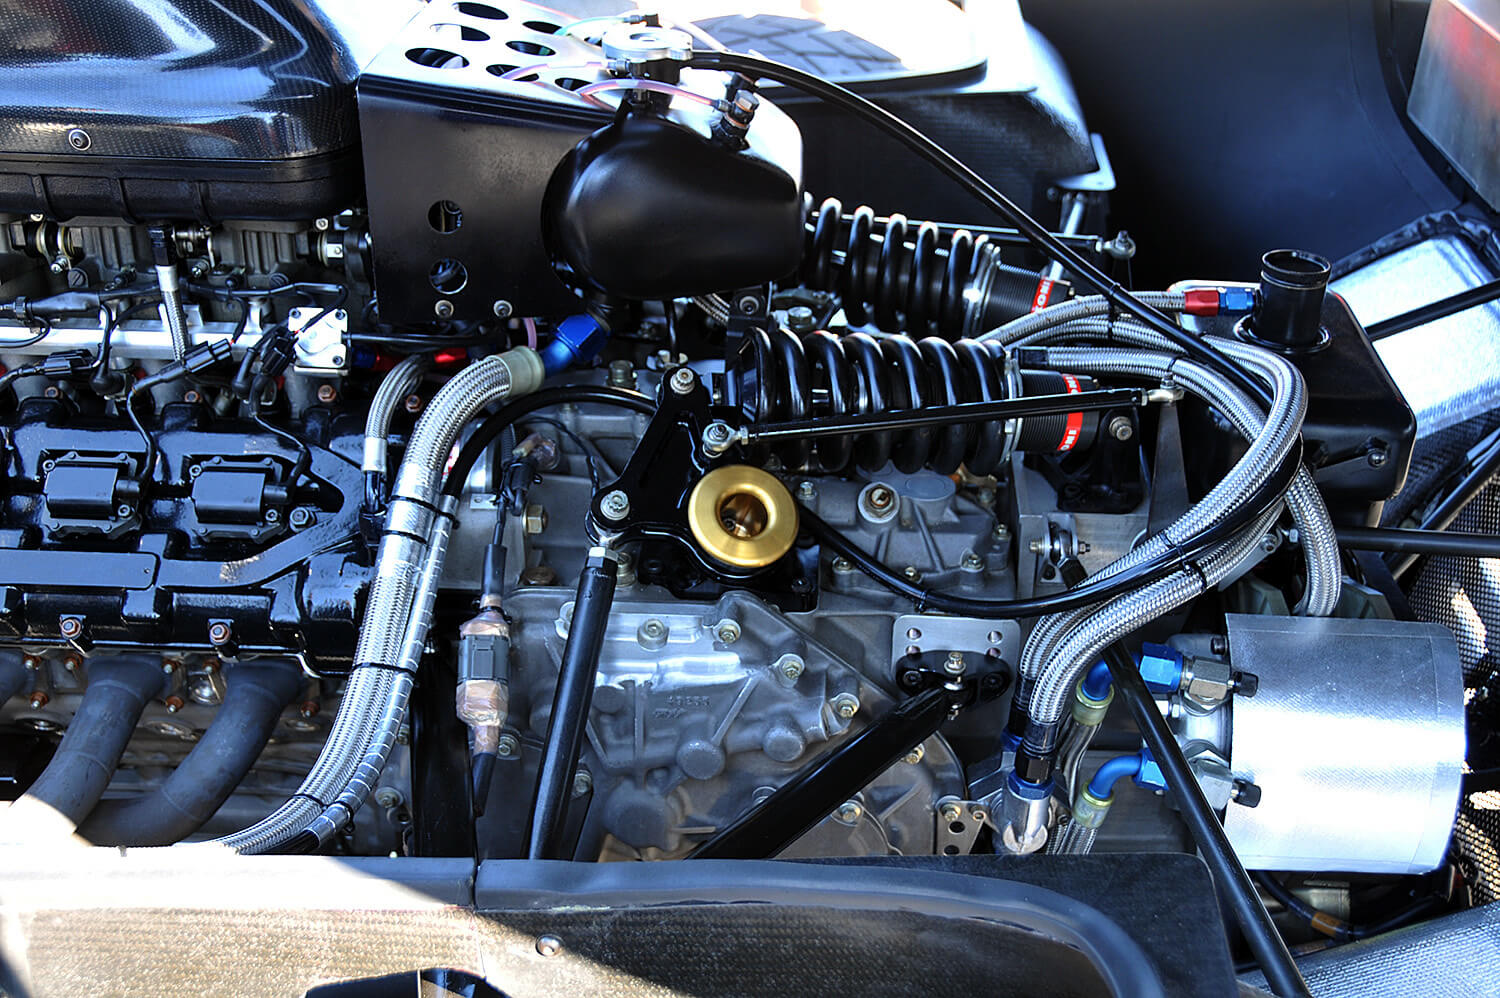 Vista parcial do motor V10